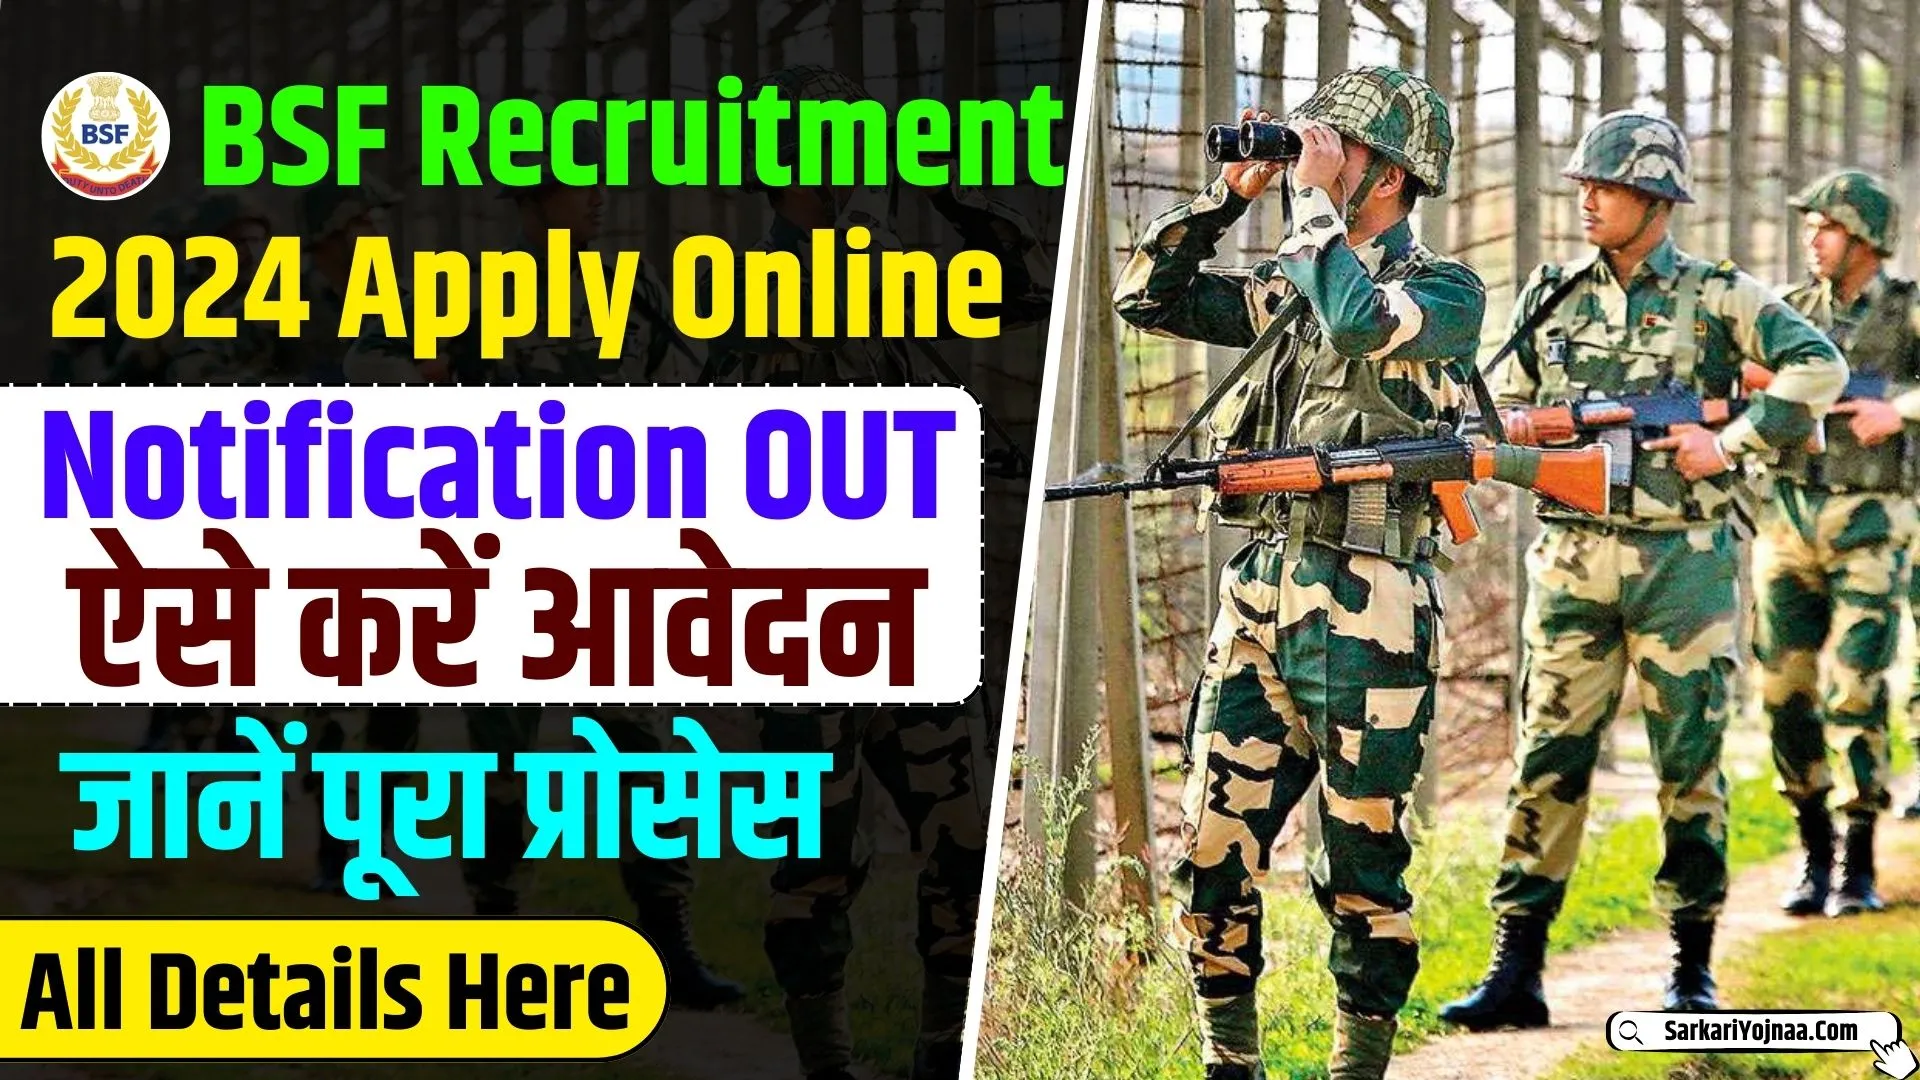 BSF Recruitment 2024 Apply Online